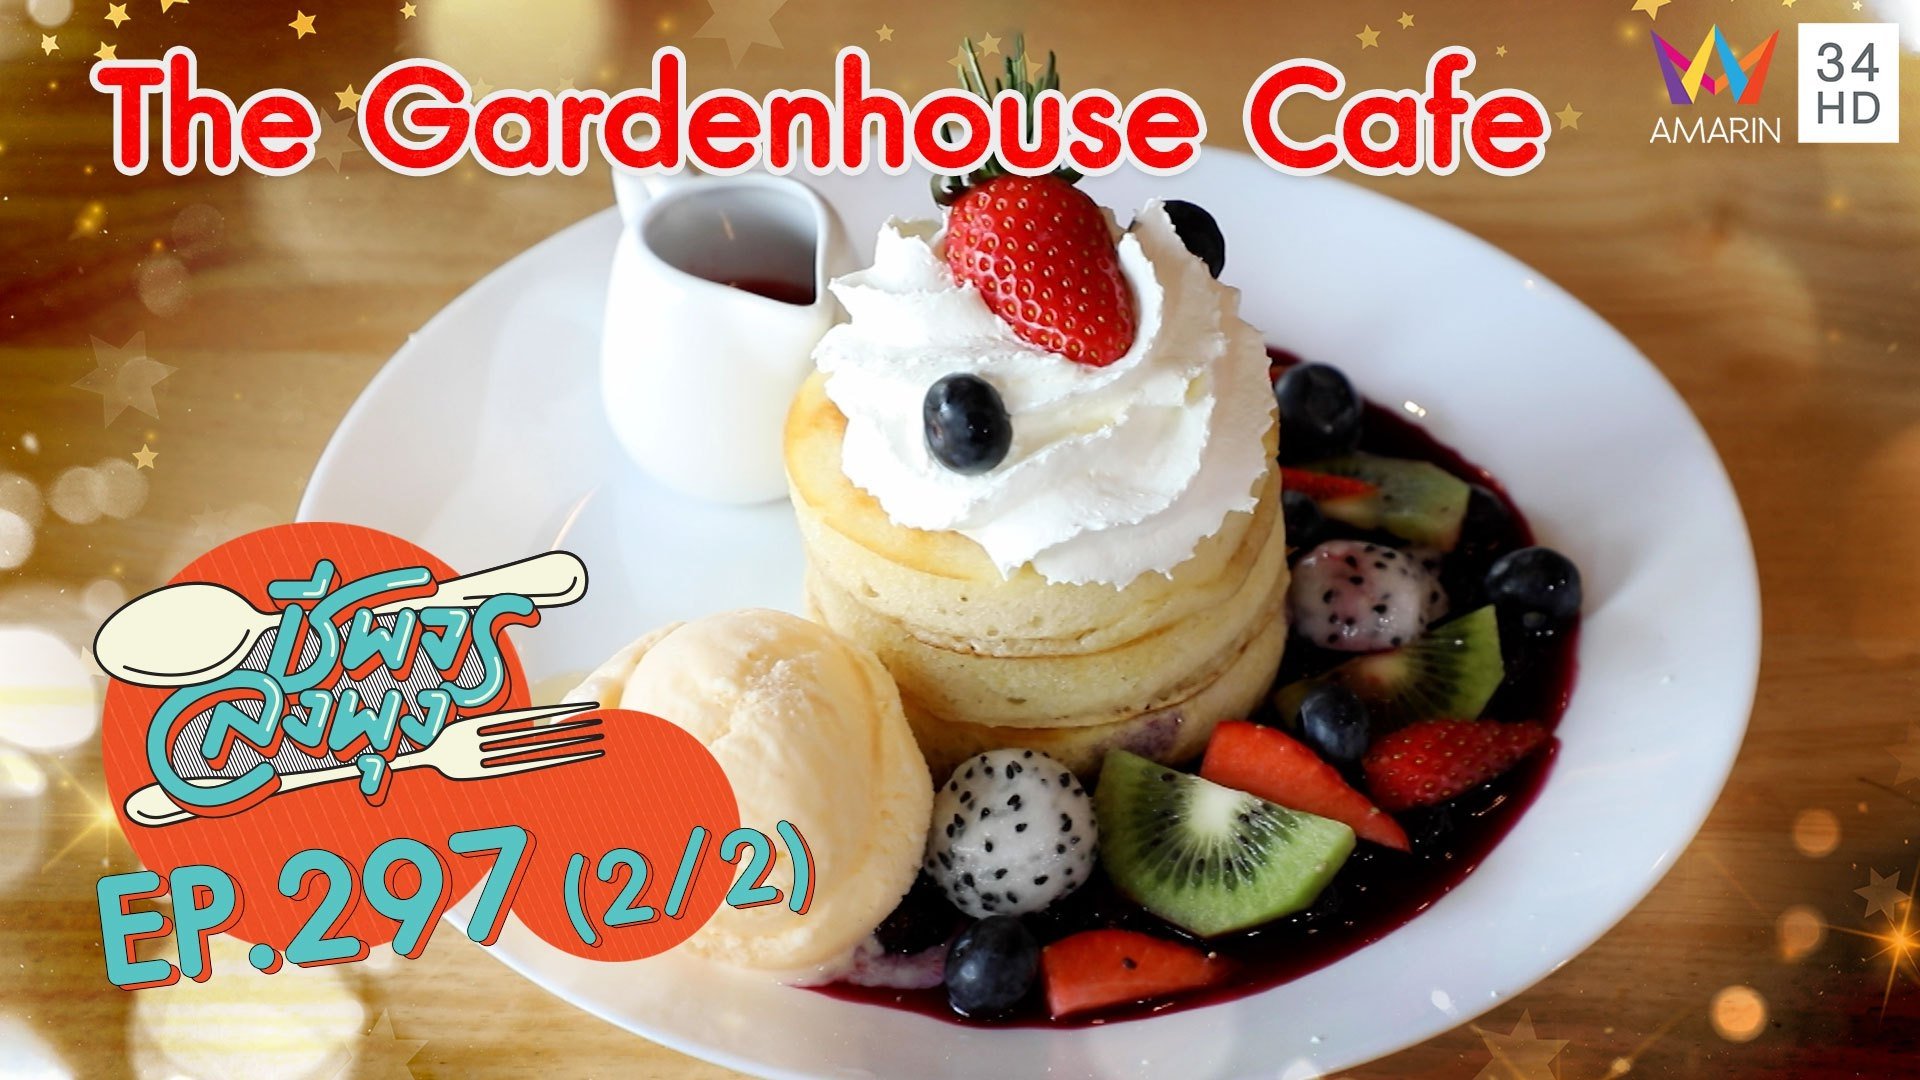 กินขนมหวานท่ามกลางสวนในร้าน @ ร้าน The Gardenhouse Cafe | ชีพจรลงพุง | 25 เม.ย. 64 (2/2) | AMARIN TVHD34